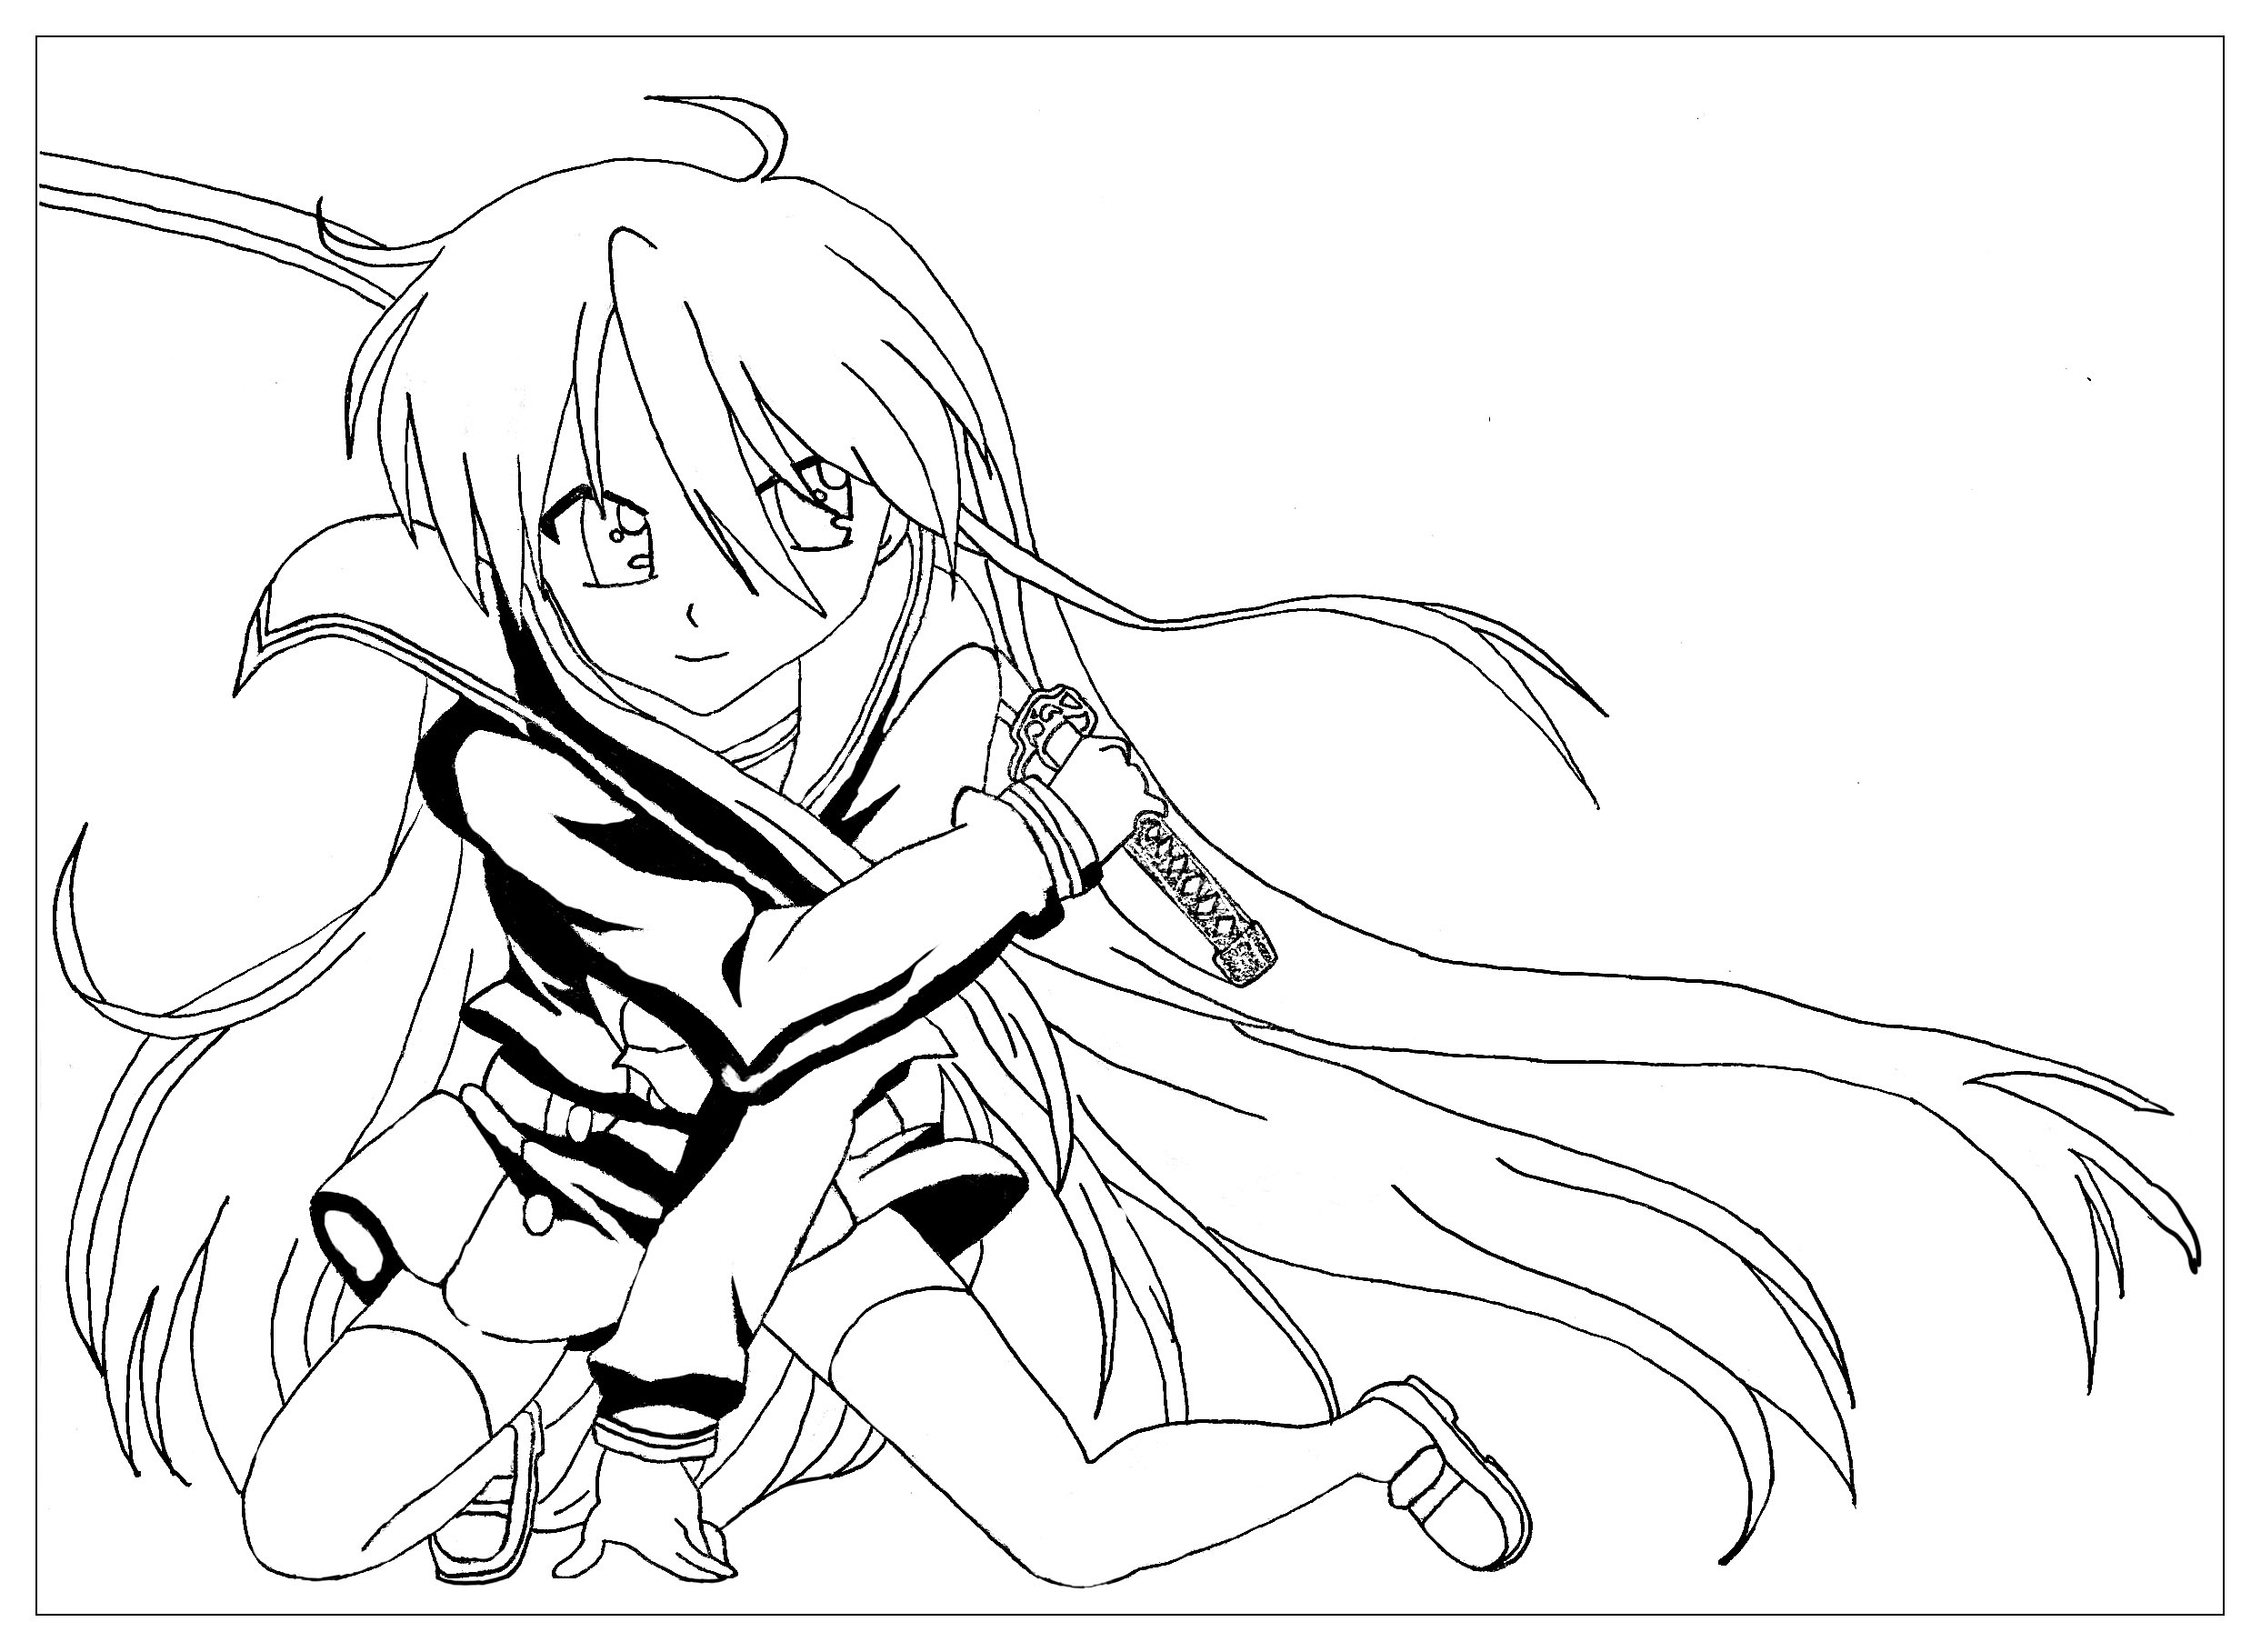 La chica de la espada : coloreado estilo Manga por Krissy